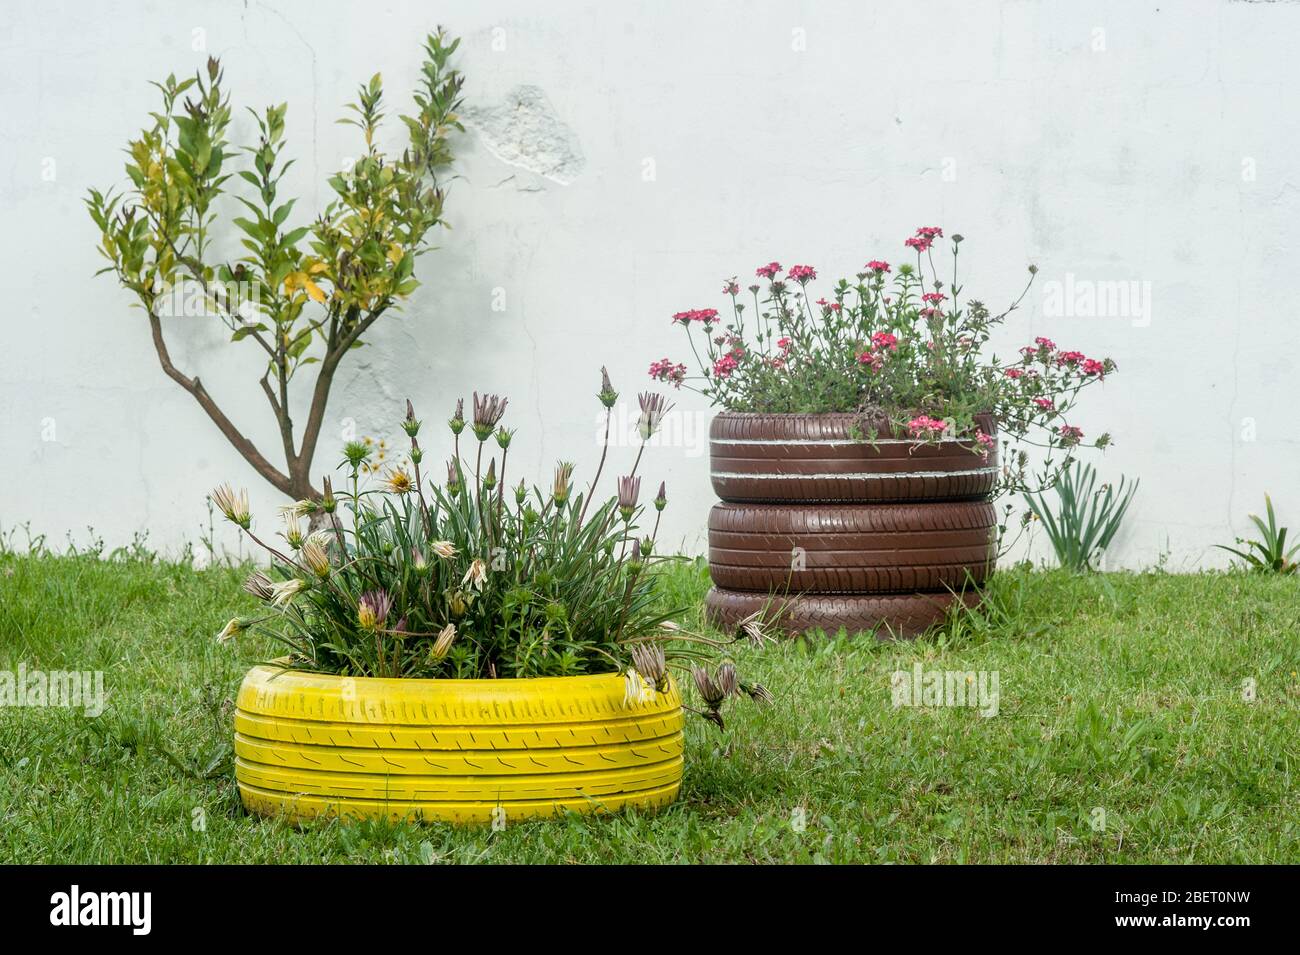 Schöne recycelte Vasen aus alten Reifen. Ideas, einen schönen Garten mit wiederverwendeten Materialien zu haben. Stockfoto